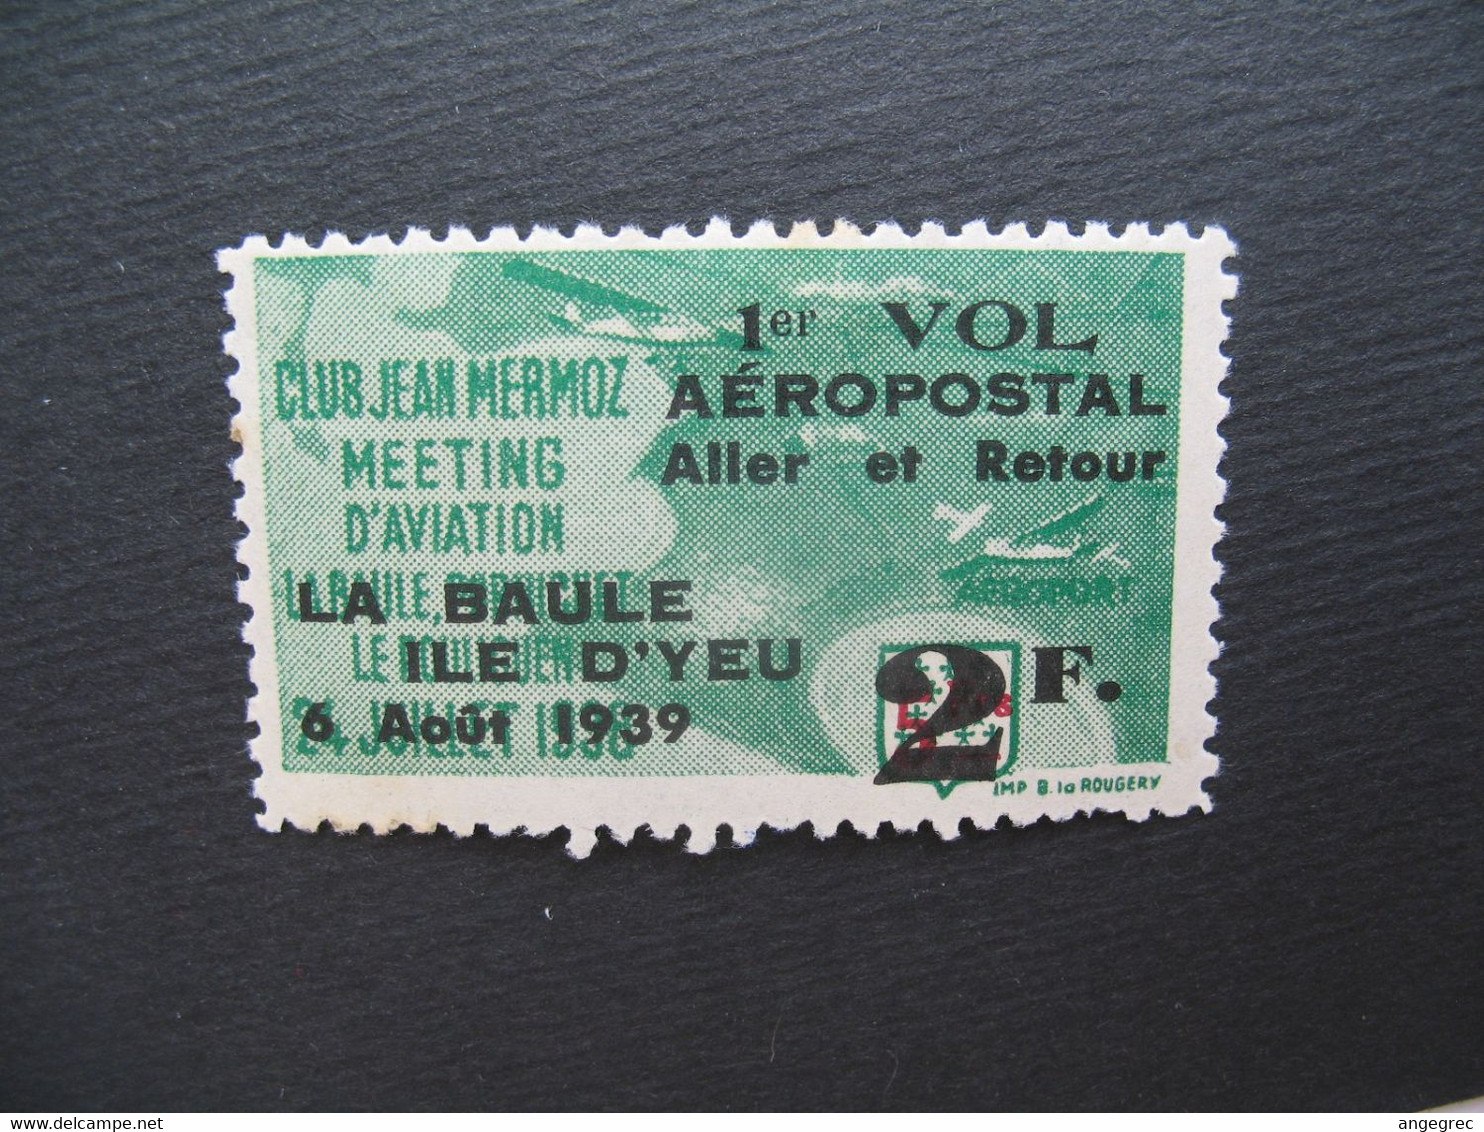 Vignette Label Stamp Vignetta  Aufkleber France Club Jean Mermoz Meeting Aviation La Baule Ile D'Yeu 1939 Vol Aéropostal - Aviación